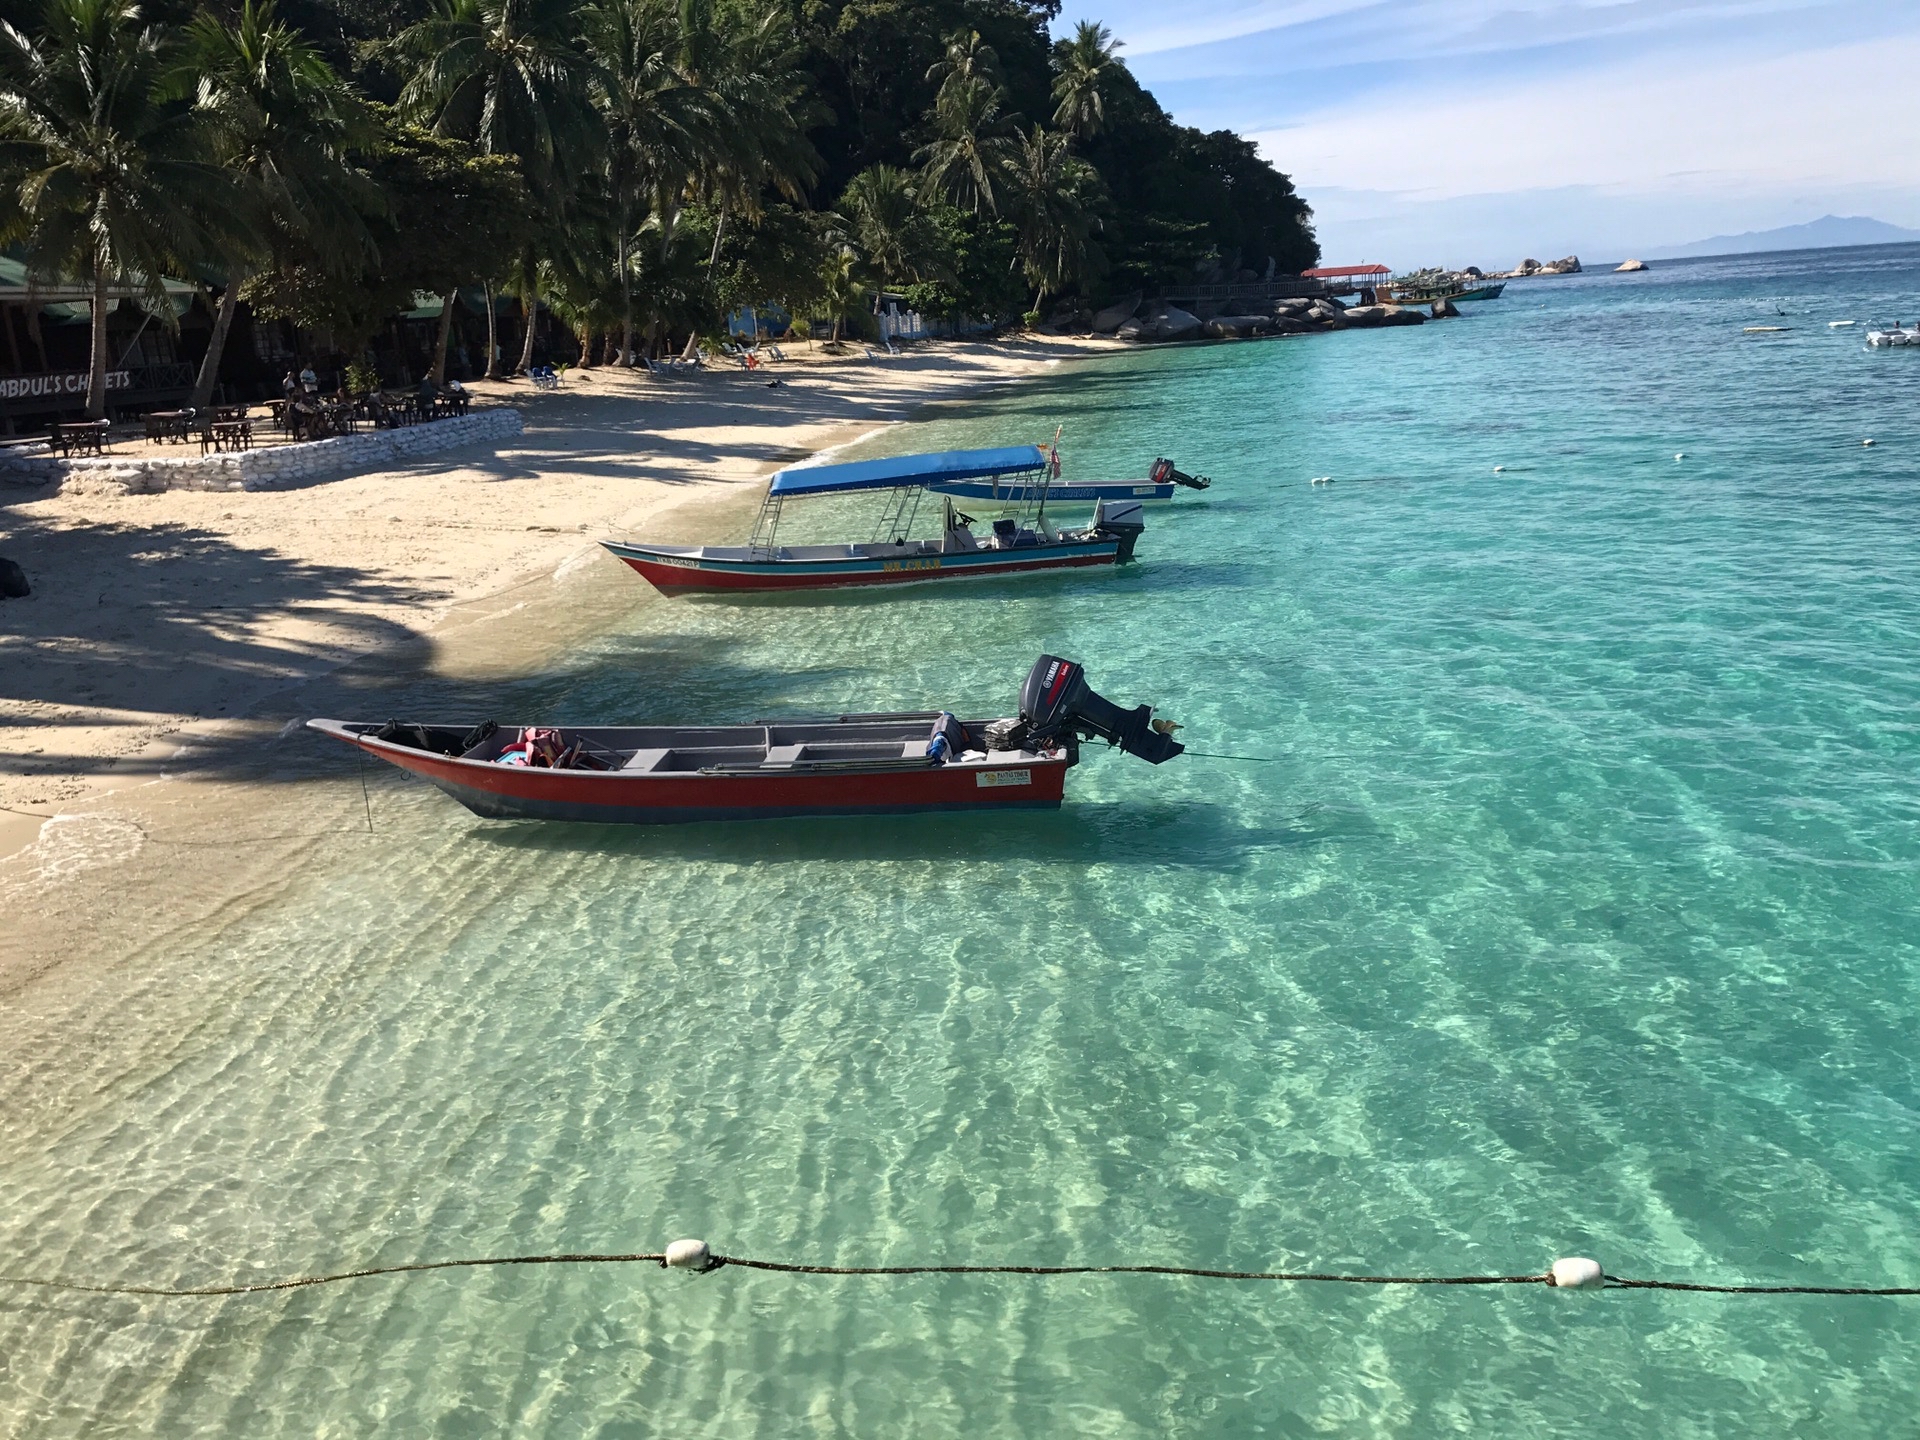 第一次听说停泊岛是从Lonely Planet 马来西亚。 “停泊岛是一个热带天堂，蓝绿色的水面清澈